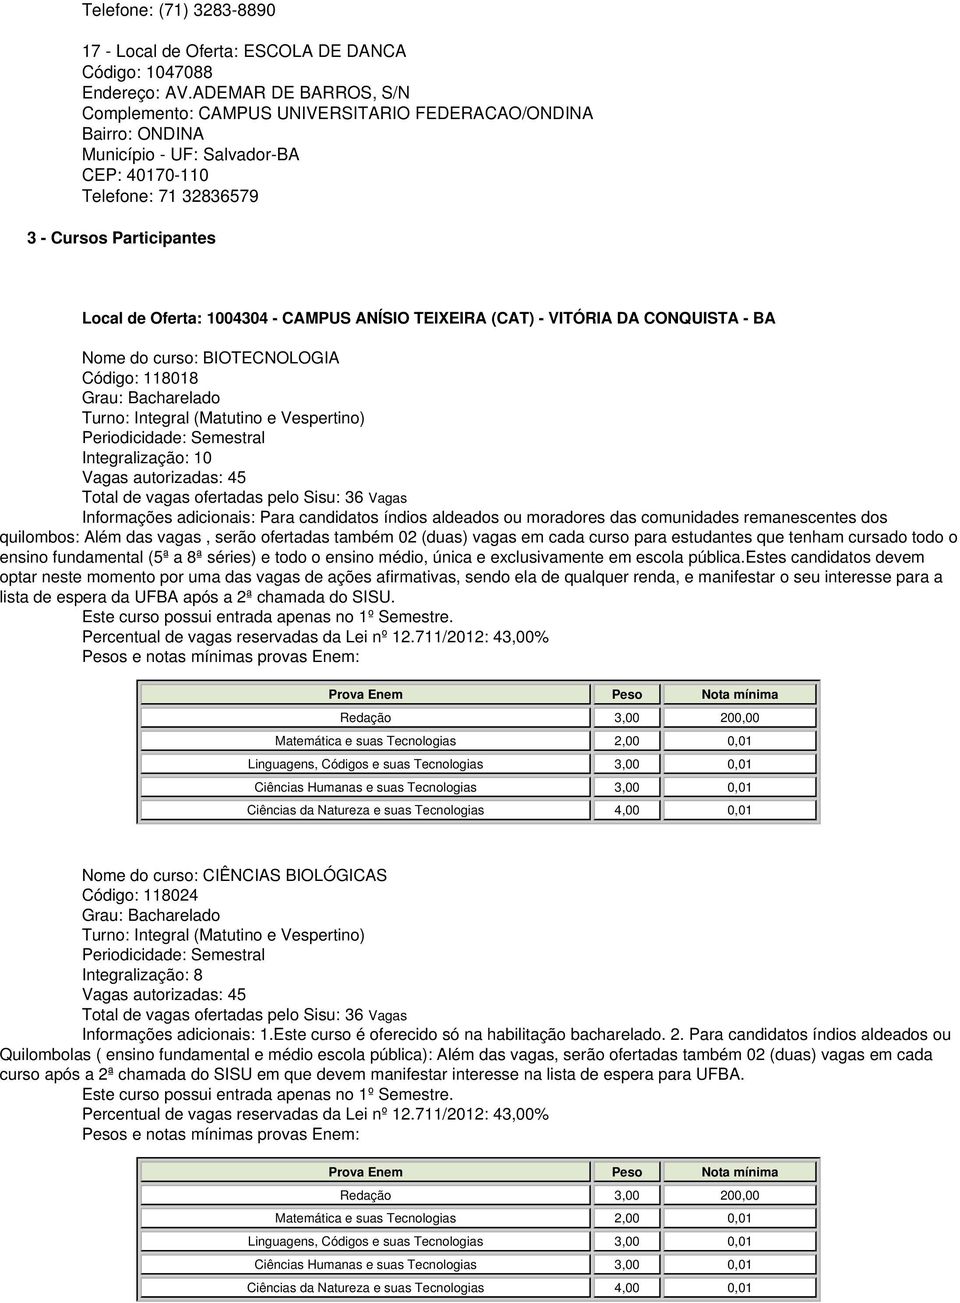 1004304 - CAMPUS ANÍSIO TEIXEIRA (CAT) - VITÓRIA DA CONQUISTA - BA Nome do curso: BIOTECNOLOGIA Código: 118018 Vagas autorizadas: 45 Total de vagas ofertadas pelo Sisu: 36 Vagas Informações